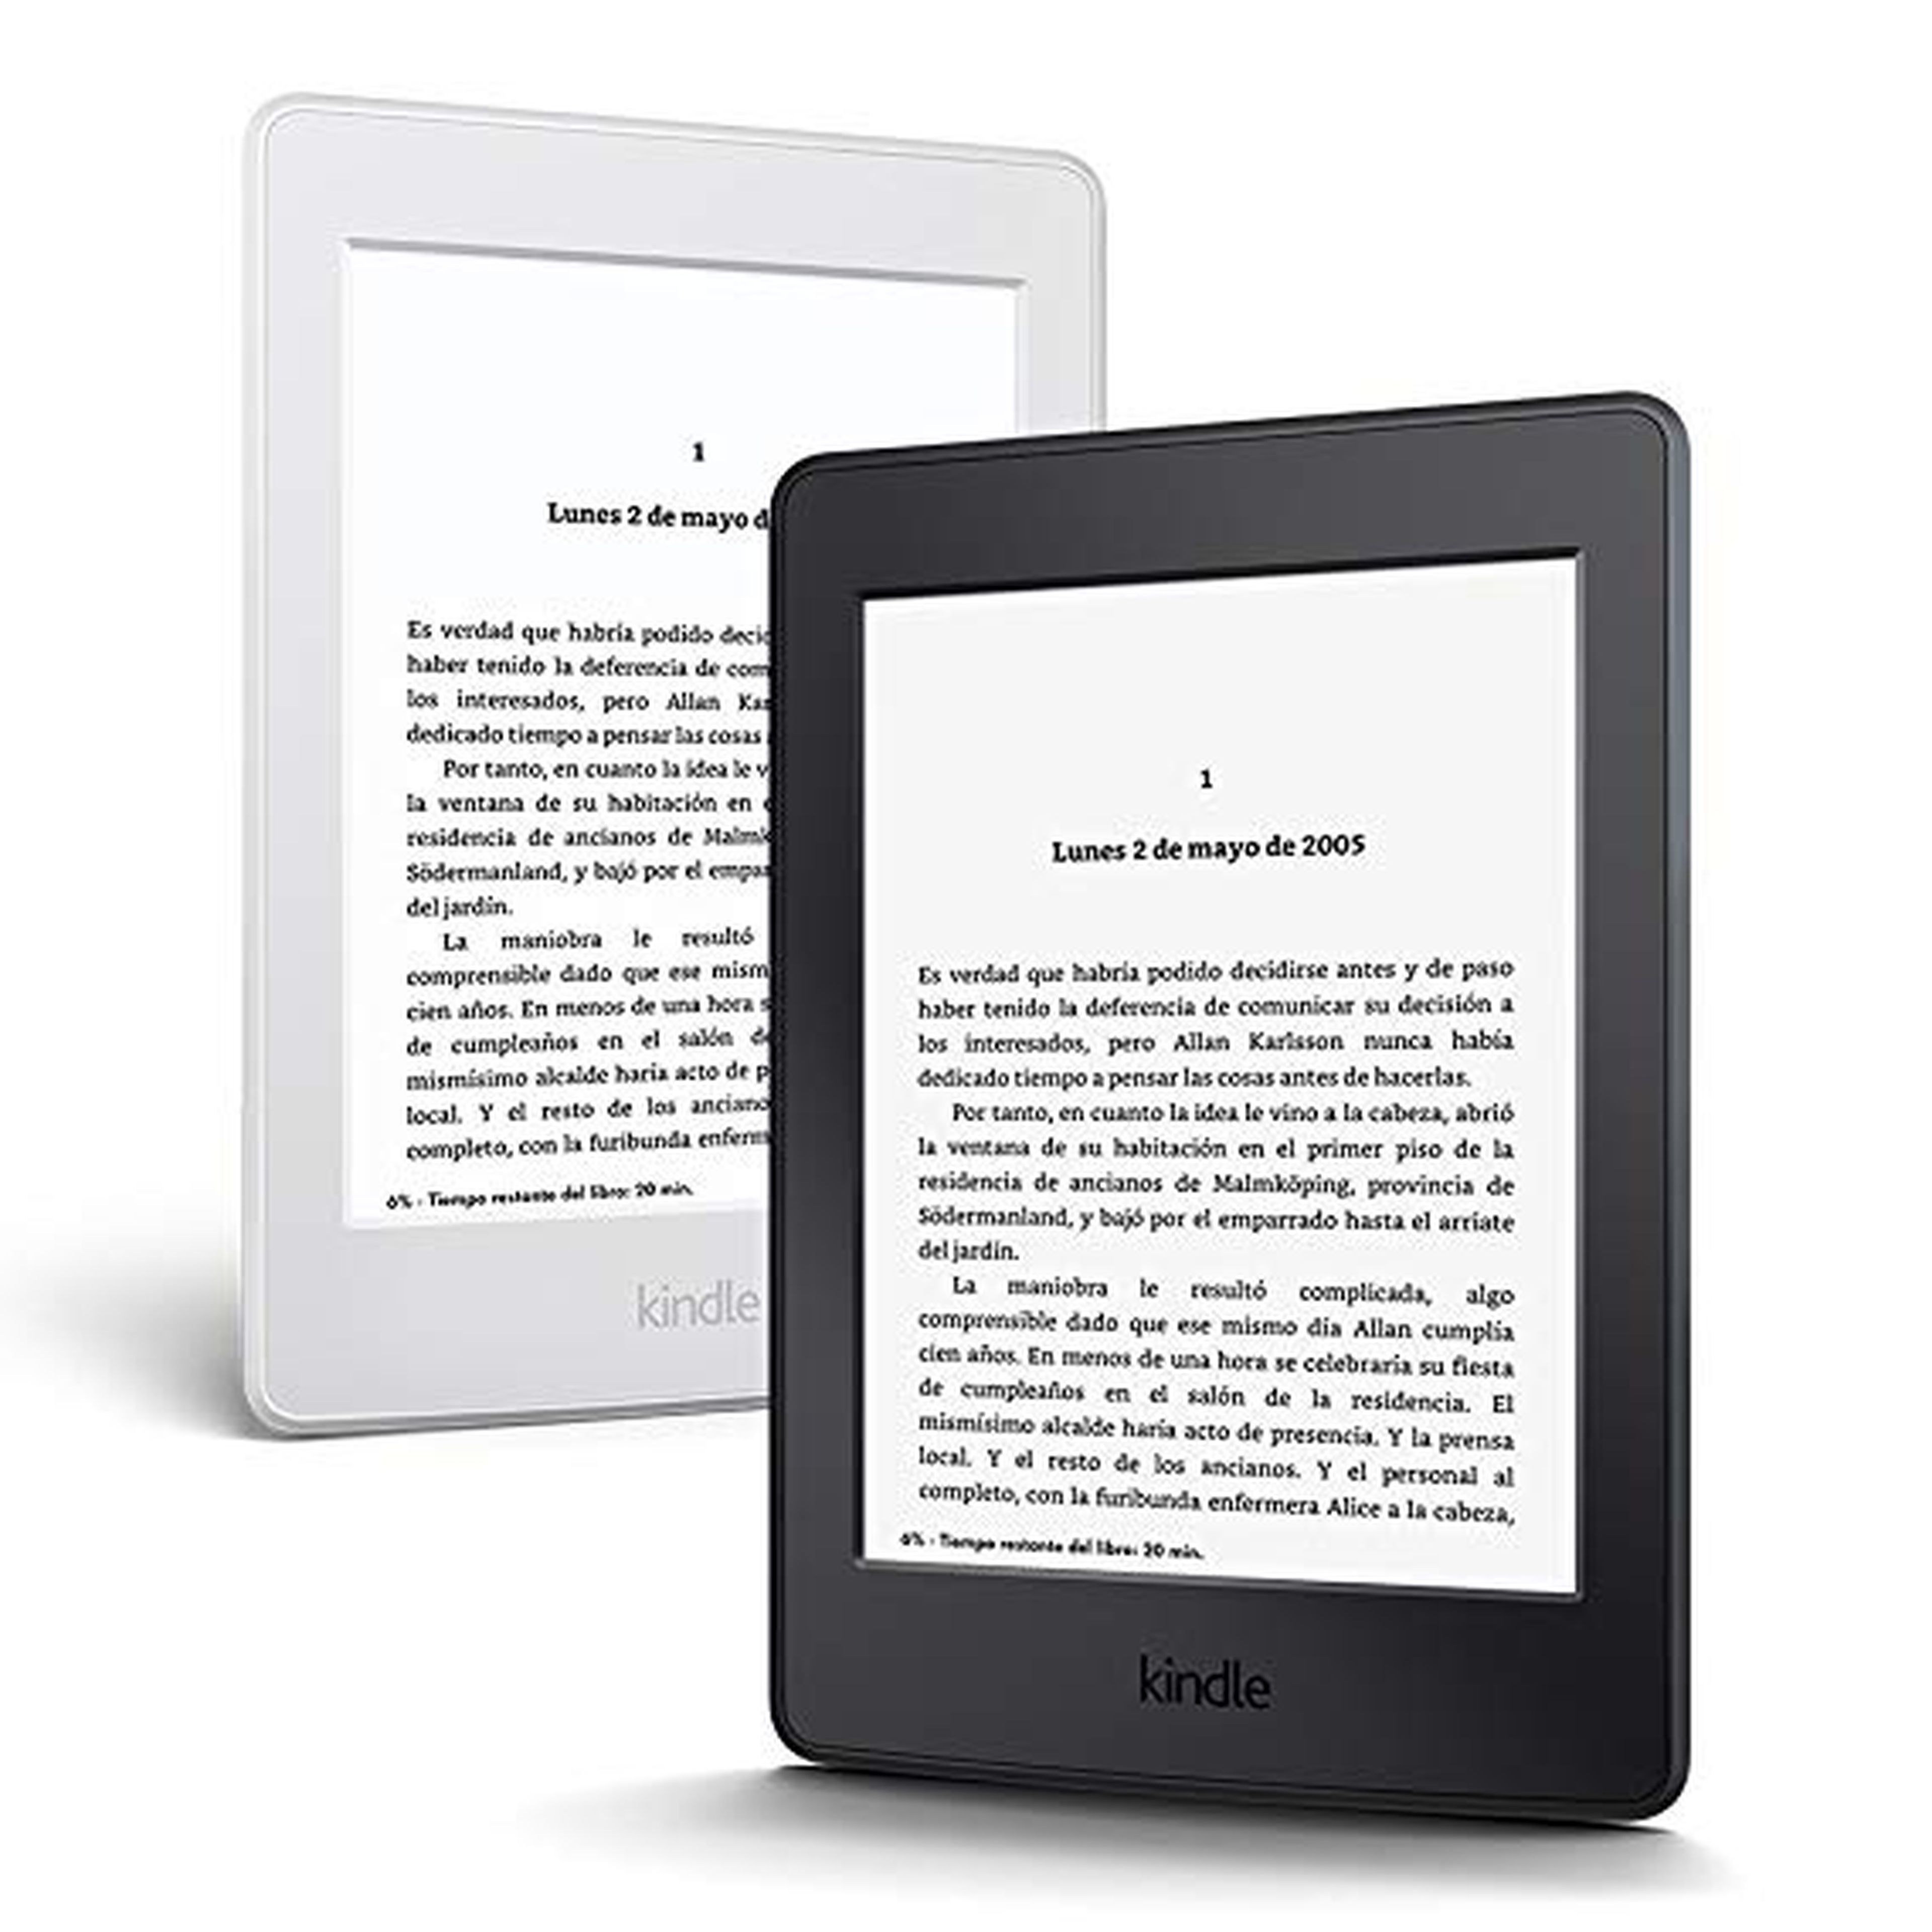 El libro electrónico Kindle Paperwhite, de Amazon